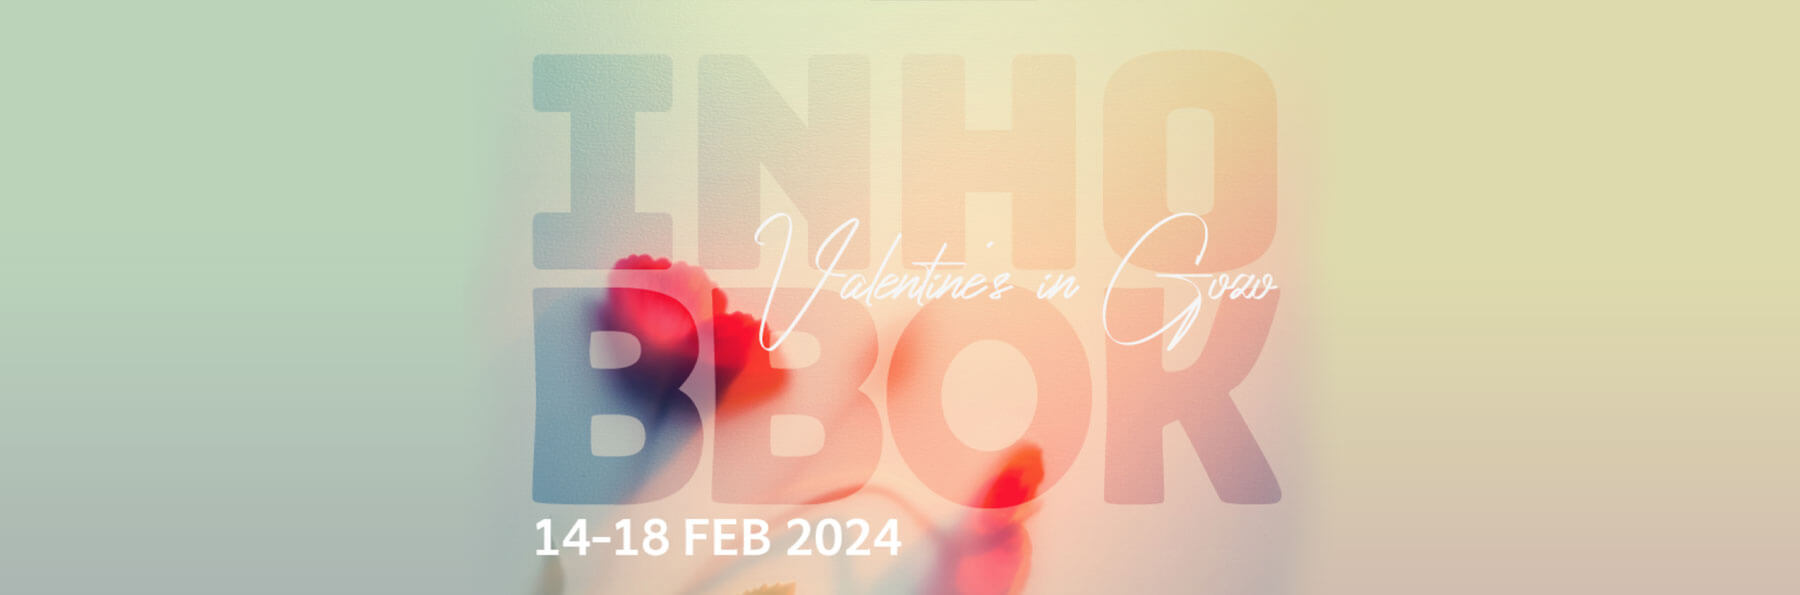 Valentine’s in Gozo 2024